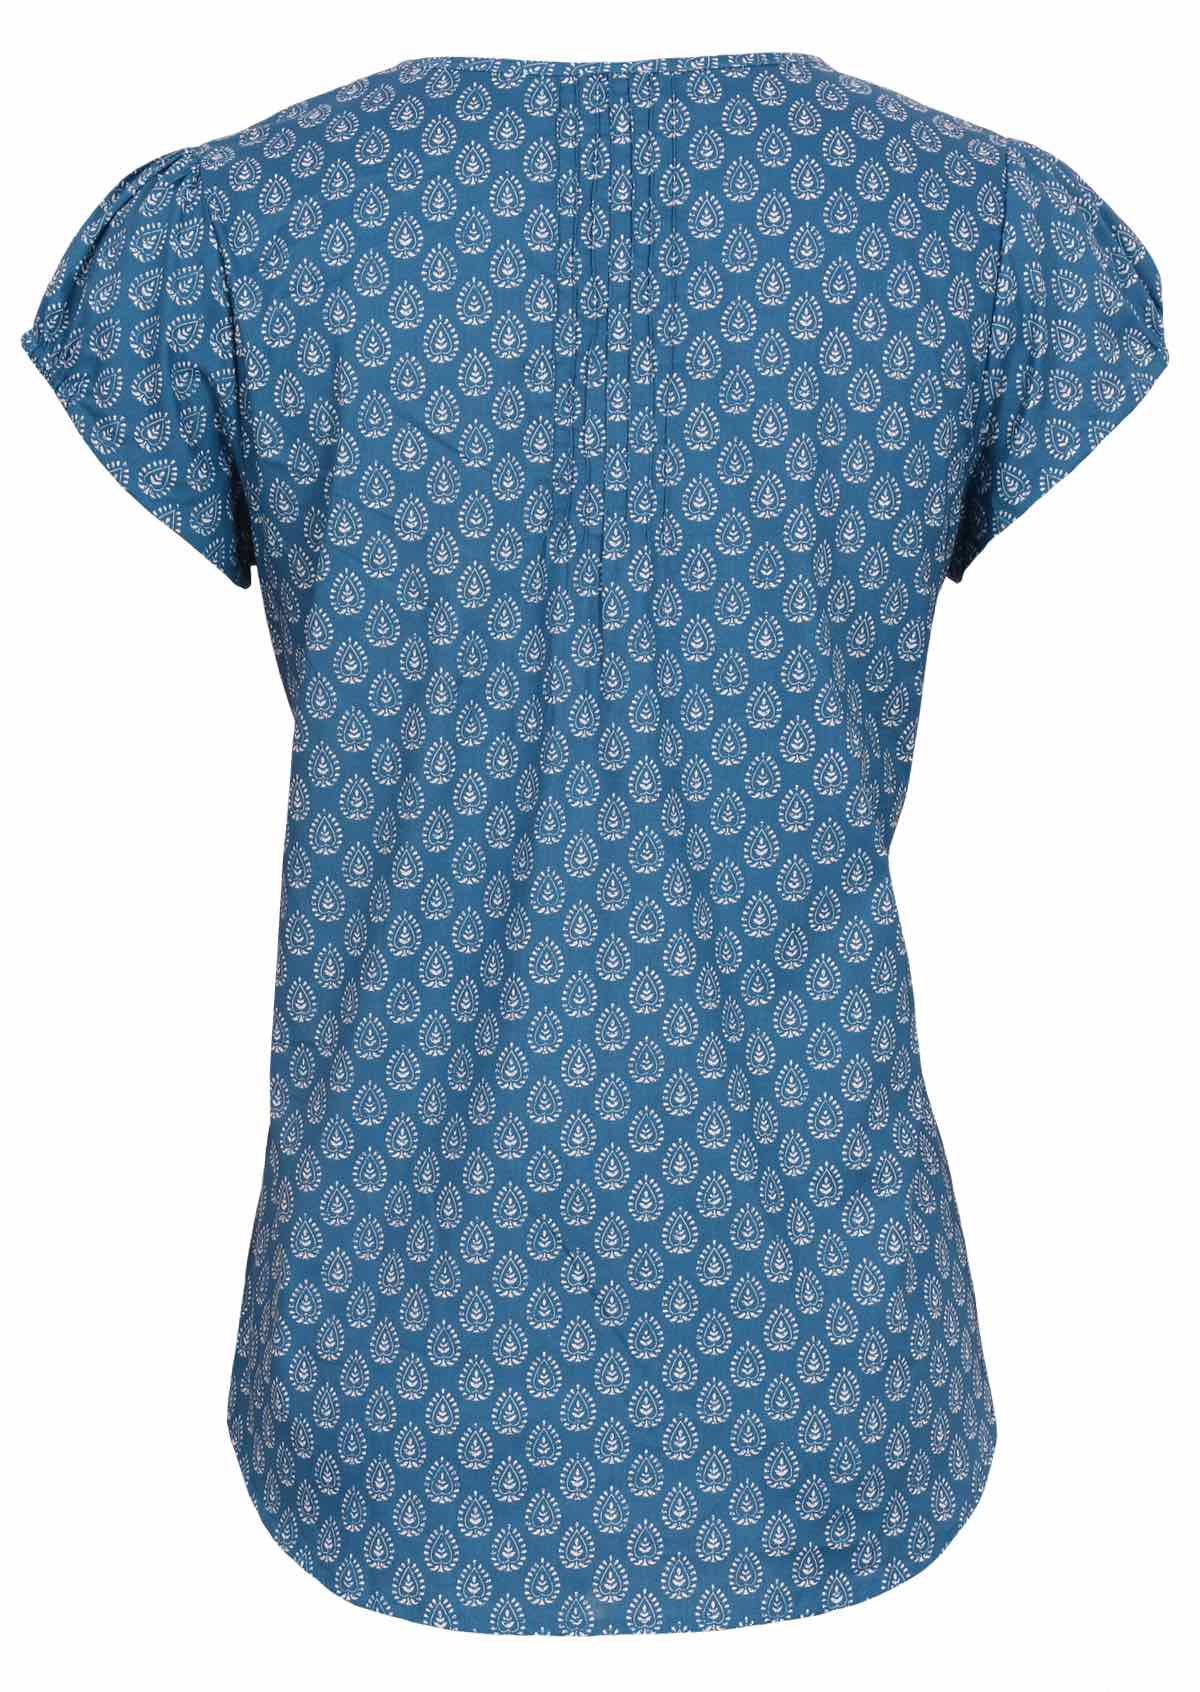 Gorgeous blue cotton short sleeve top